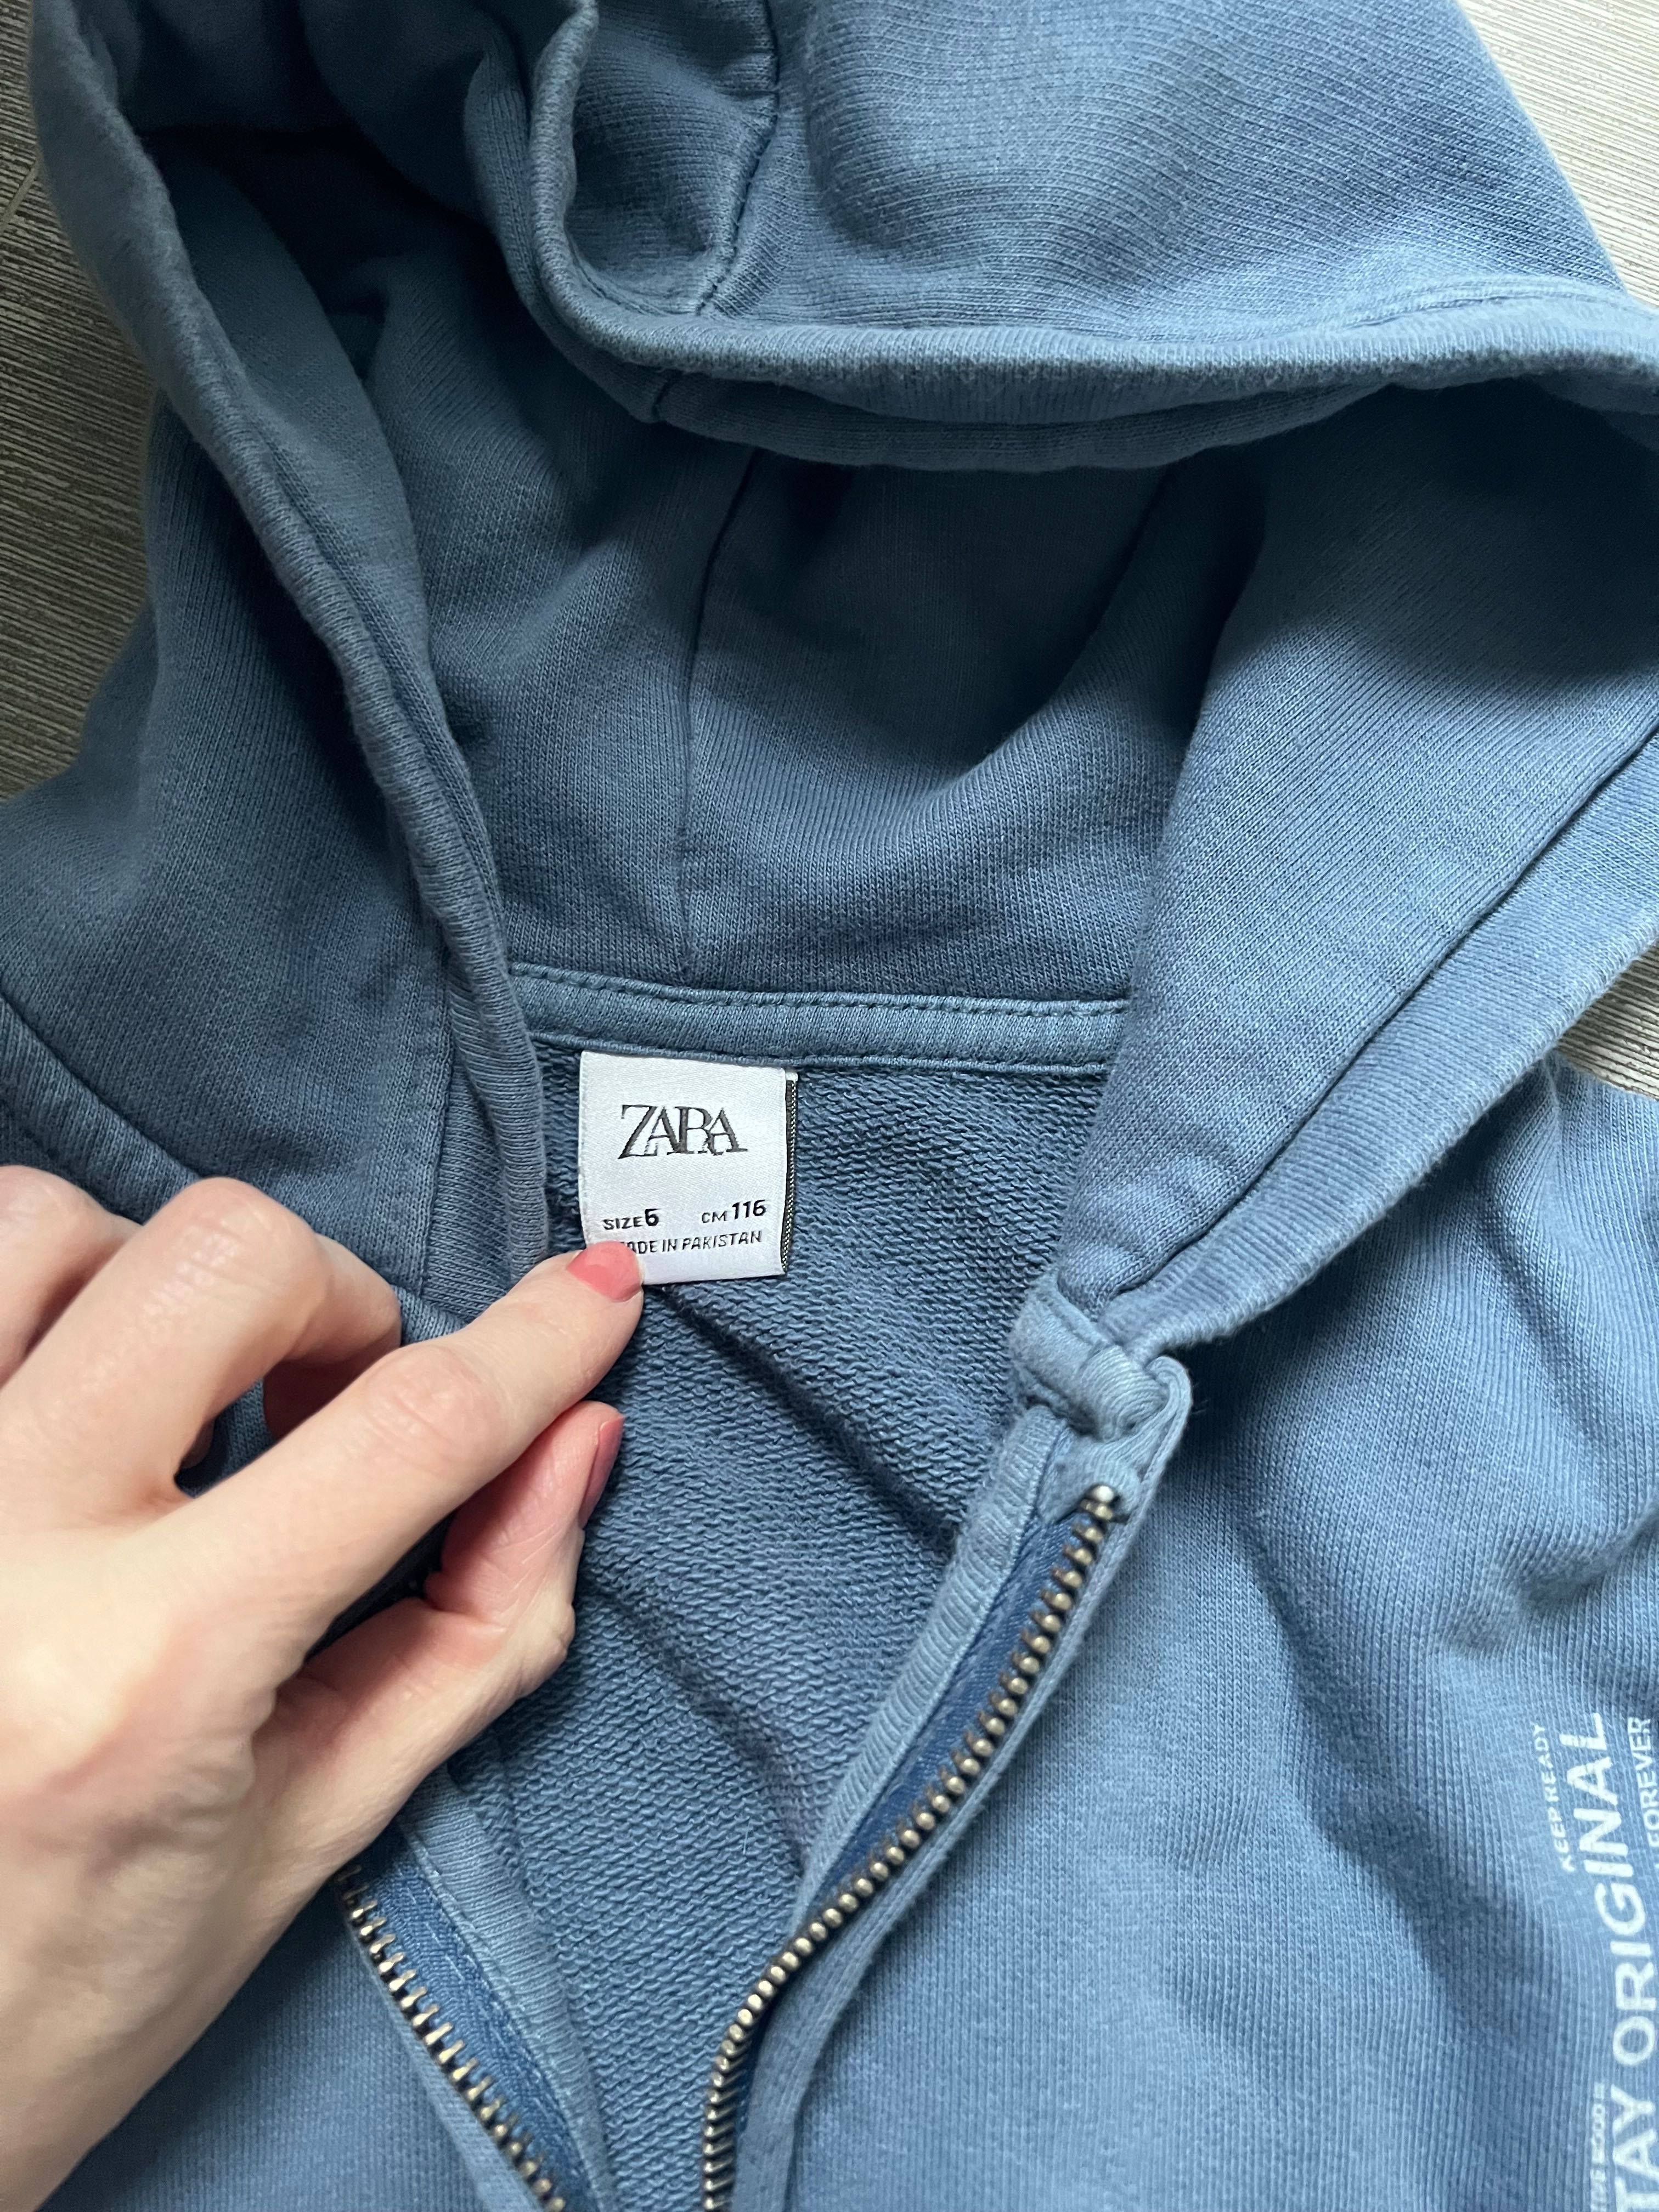 Bluza Zara 116 chłopiec